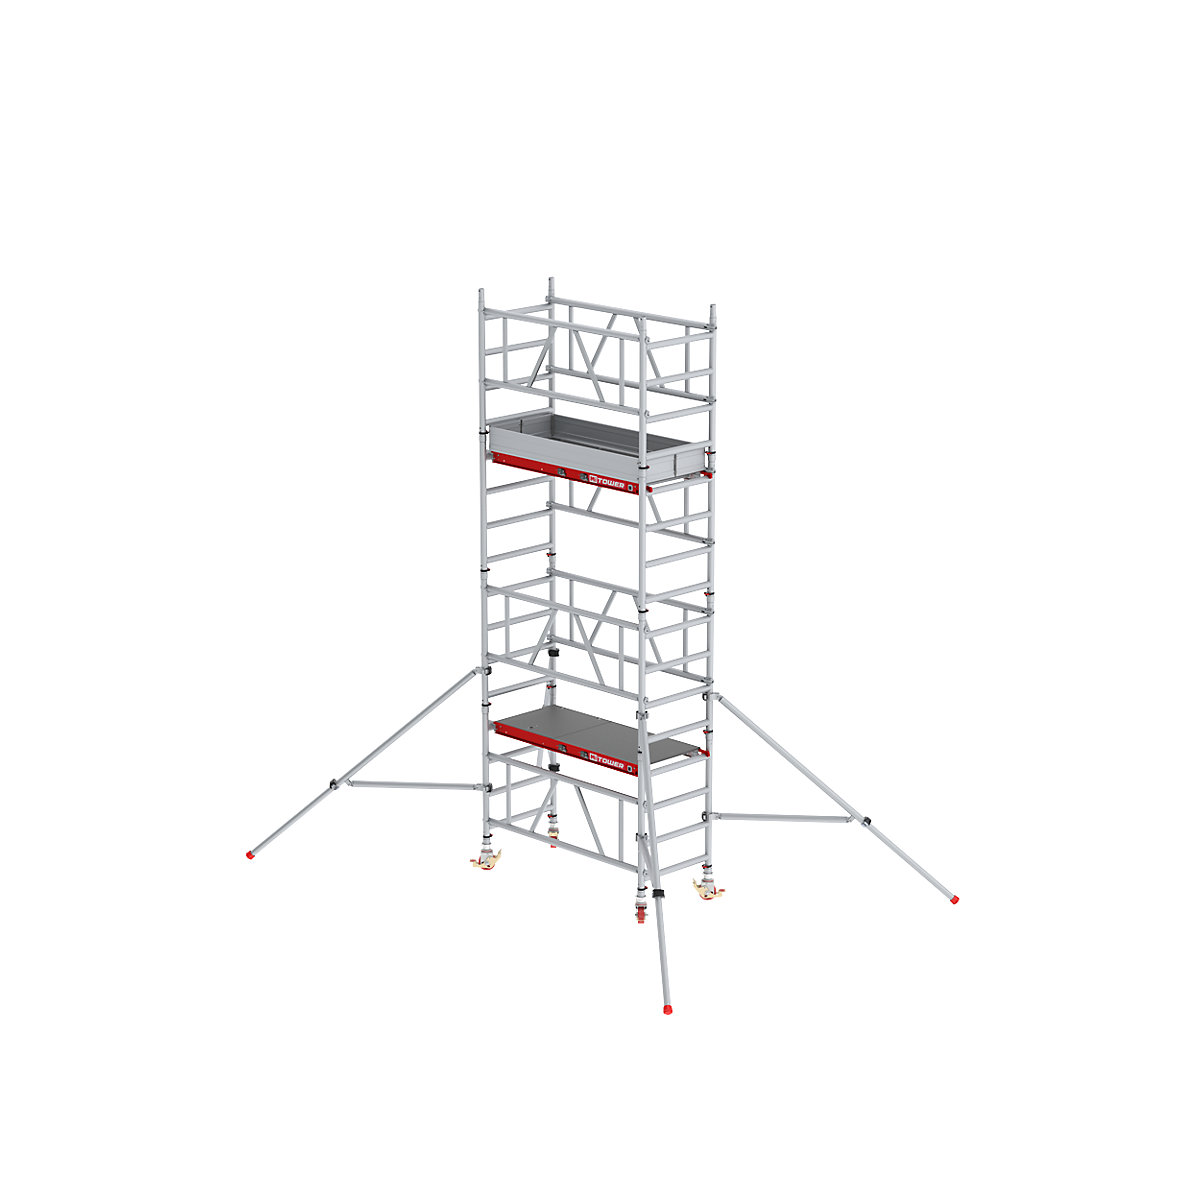 Altrex Schnellbau-Fahrgerüst MiTOWER Plus, Fiber-Deck®-Plattform, Arbeitshöhe 5 m